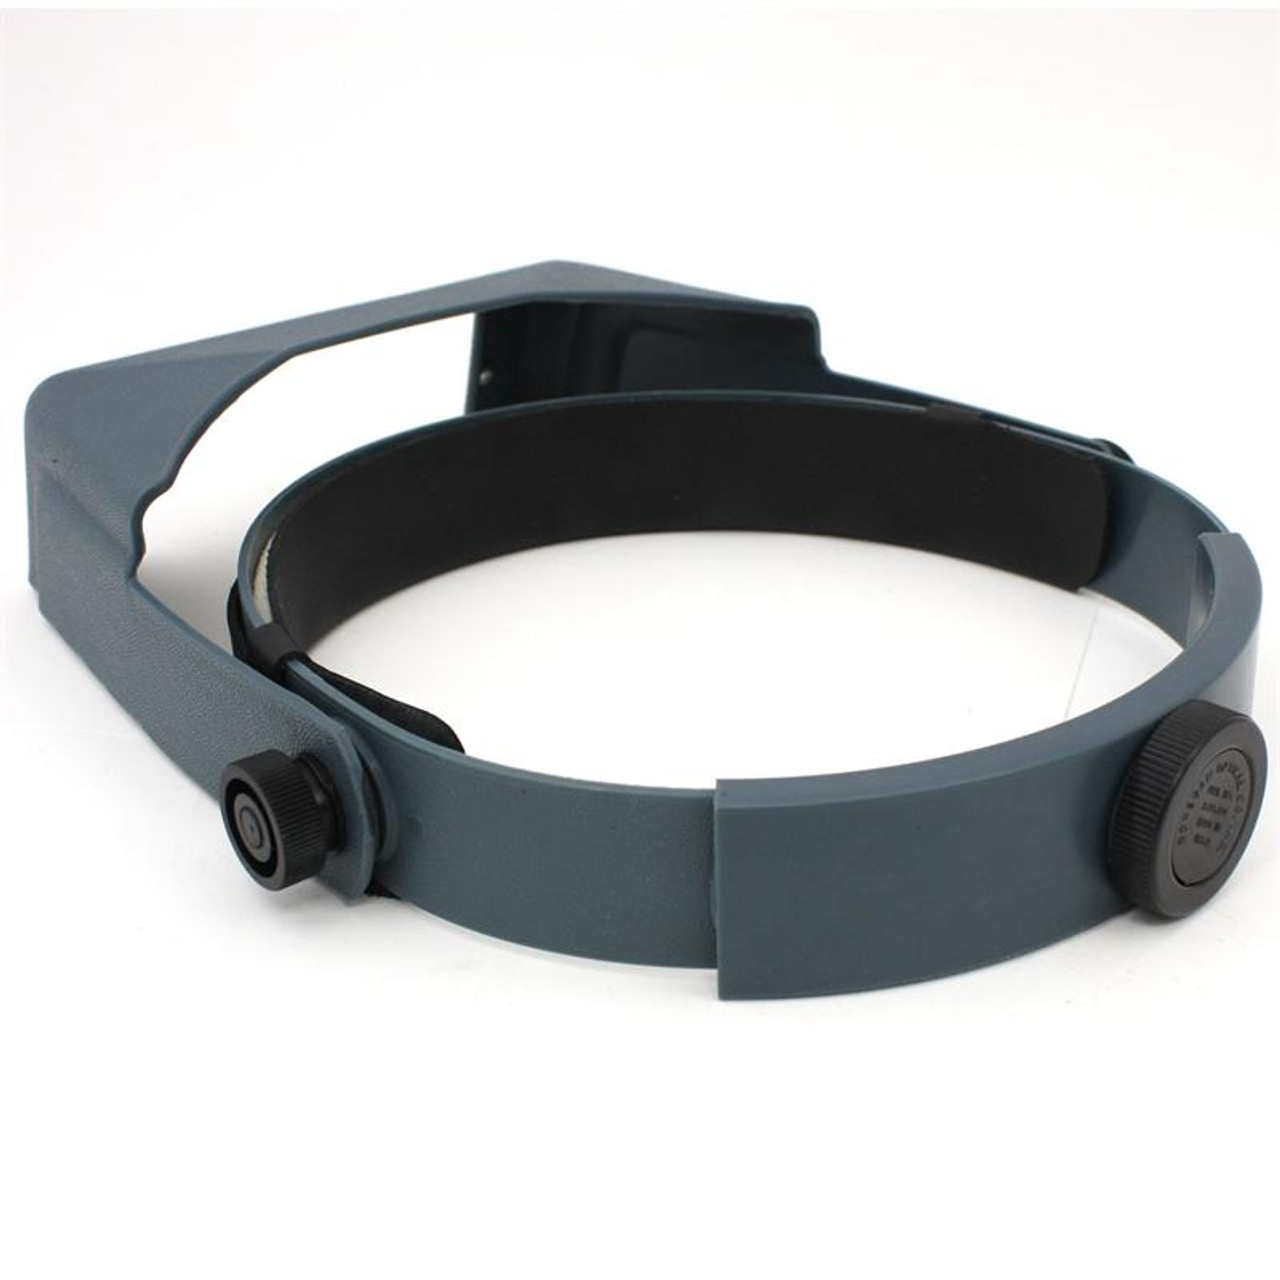 Donegan DA Optivisor Headband Magnifier Contenti 220-982-GRP